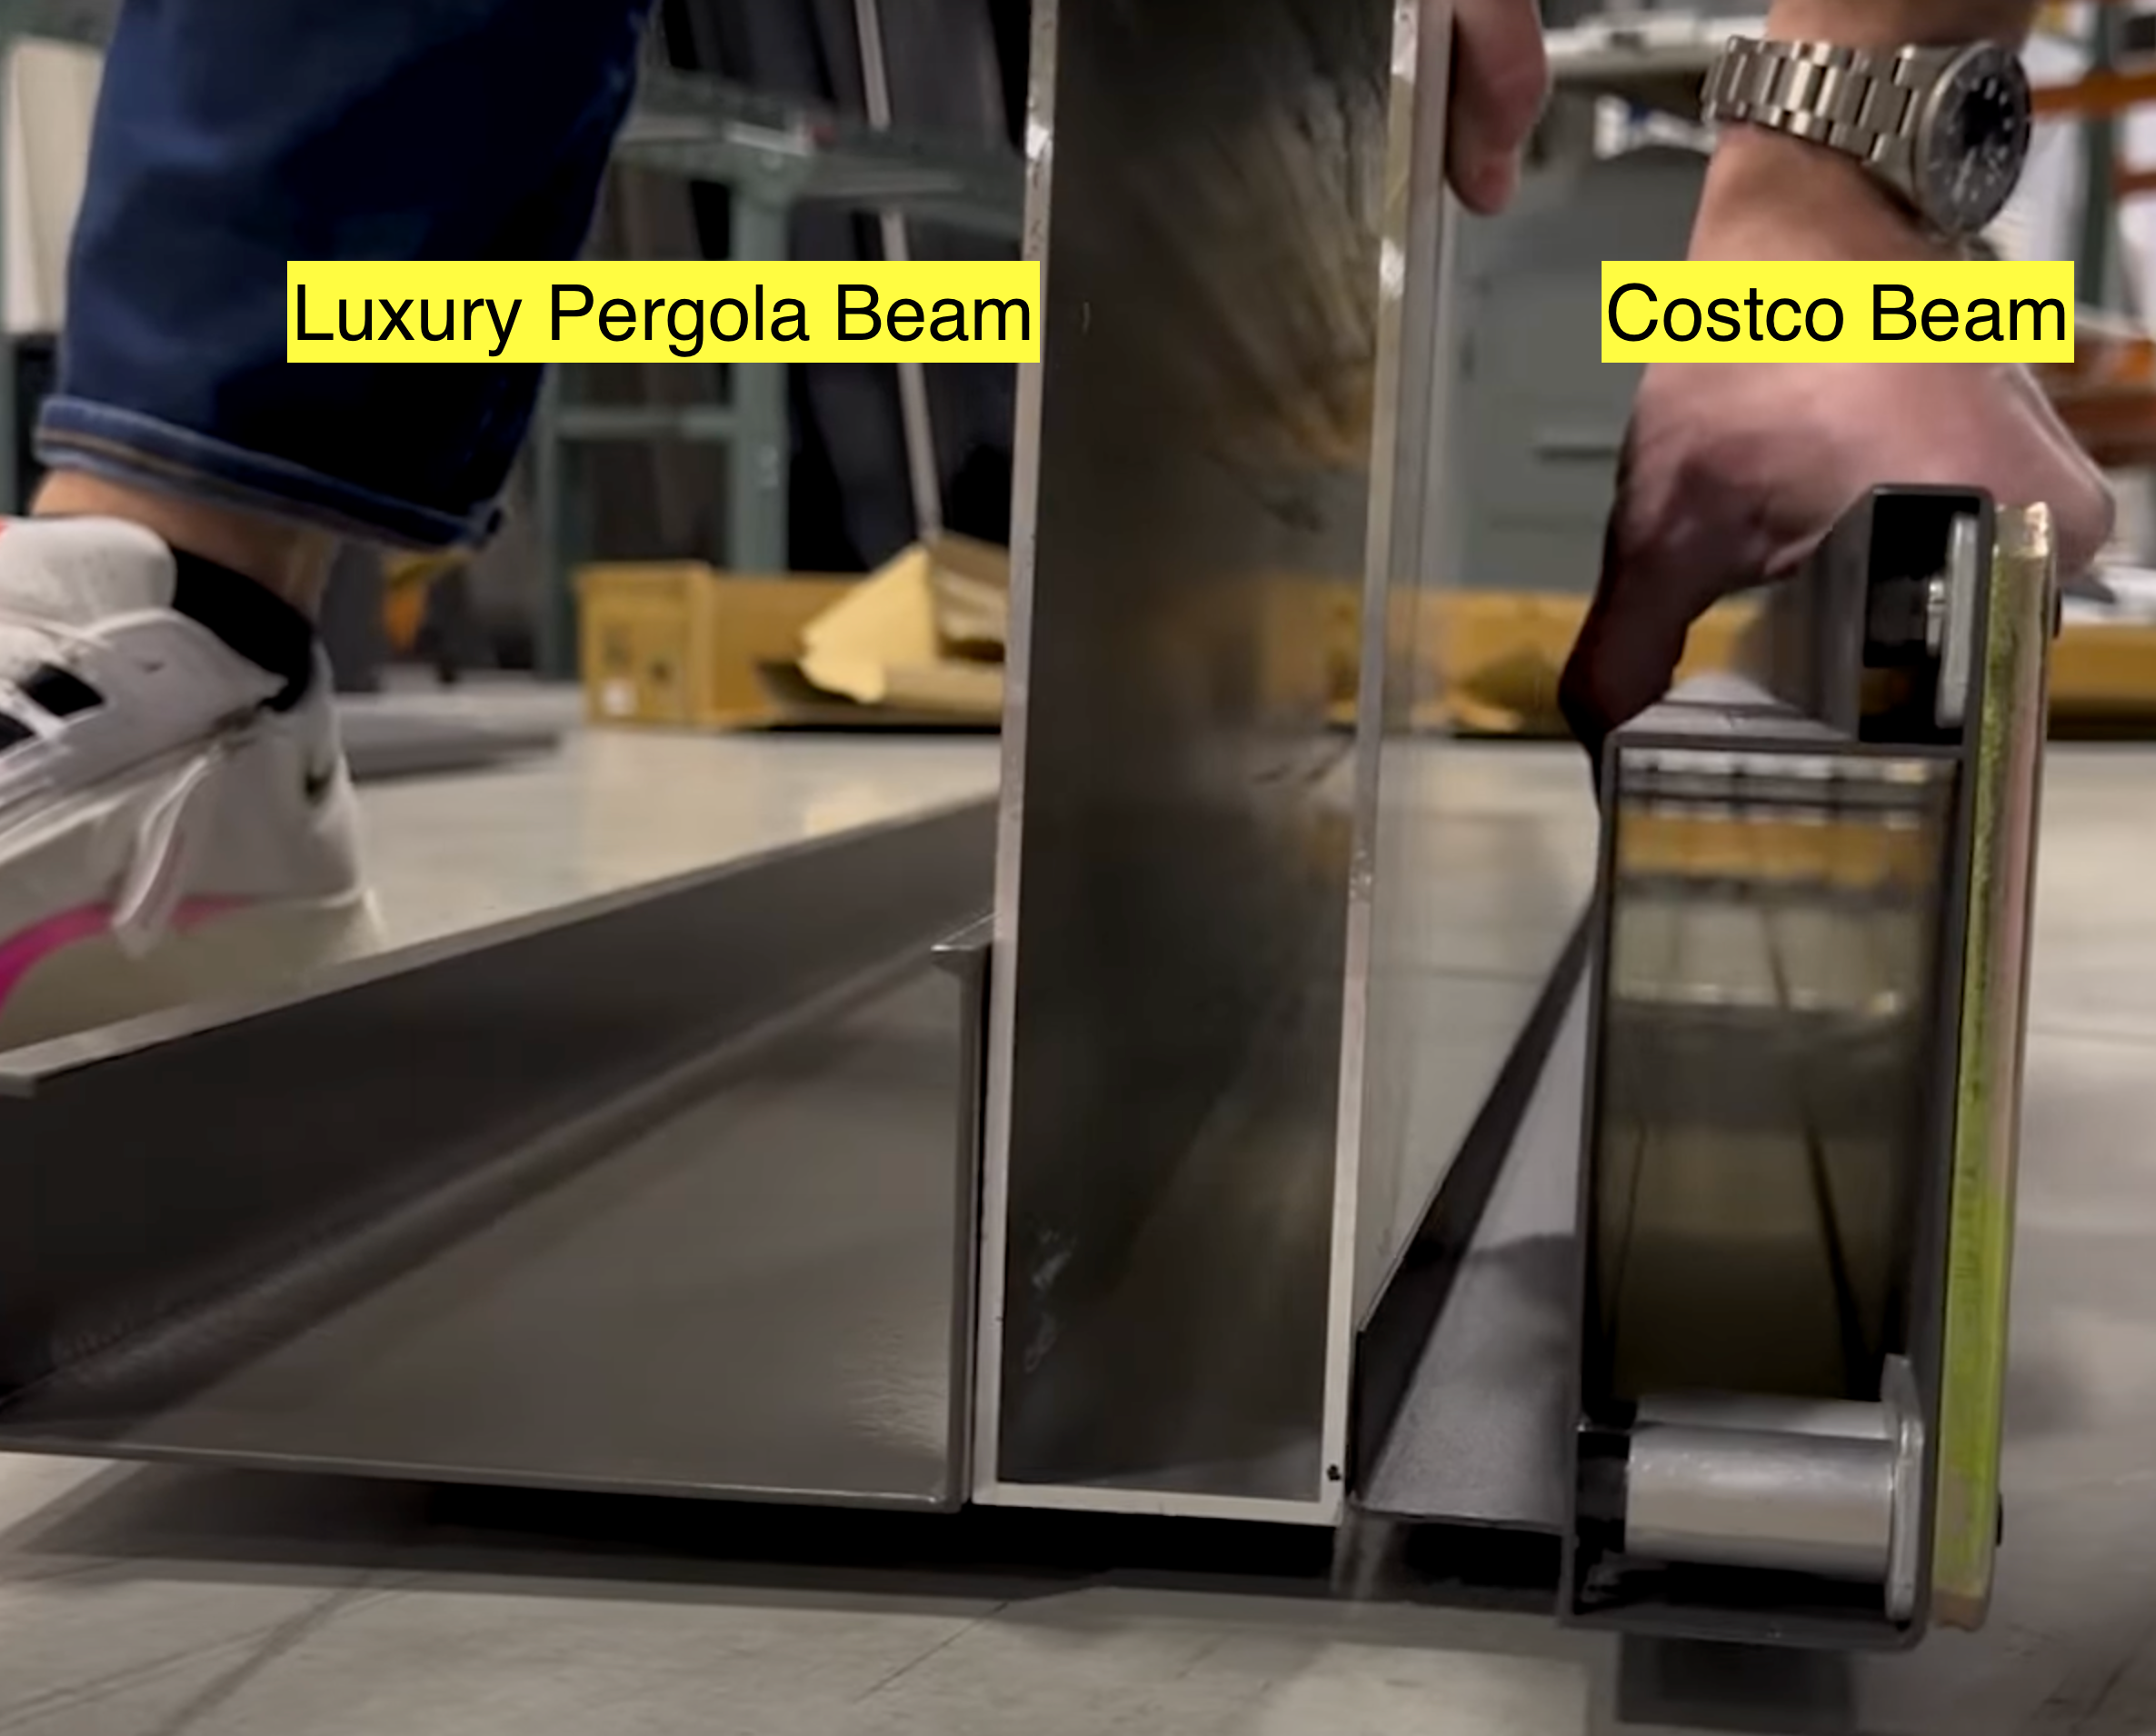 Costco Mirador beam vs Luxury Pergola